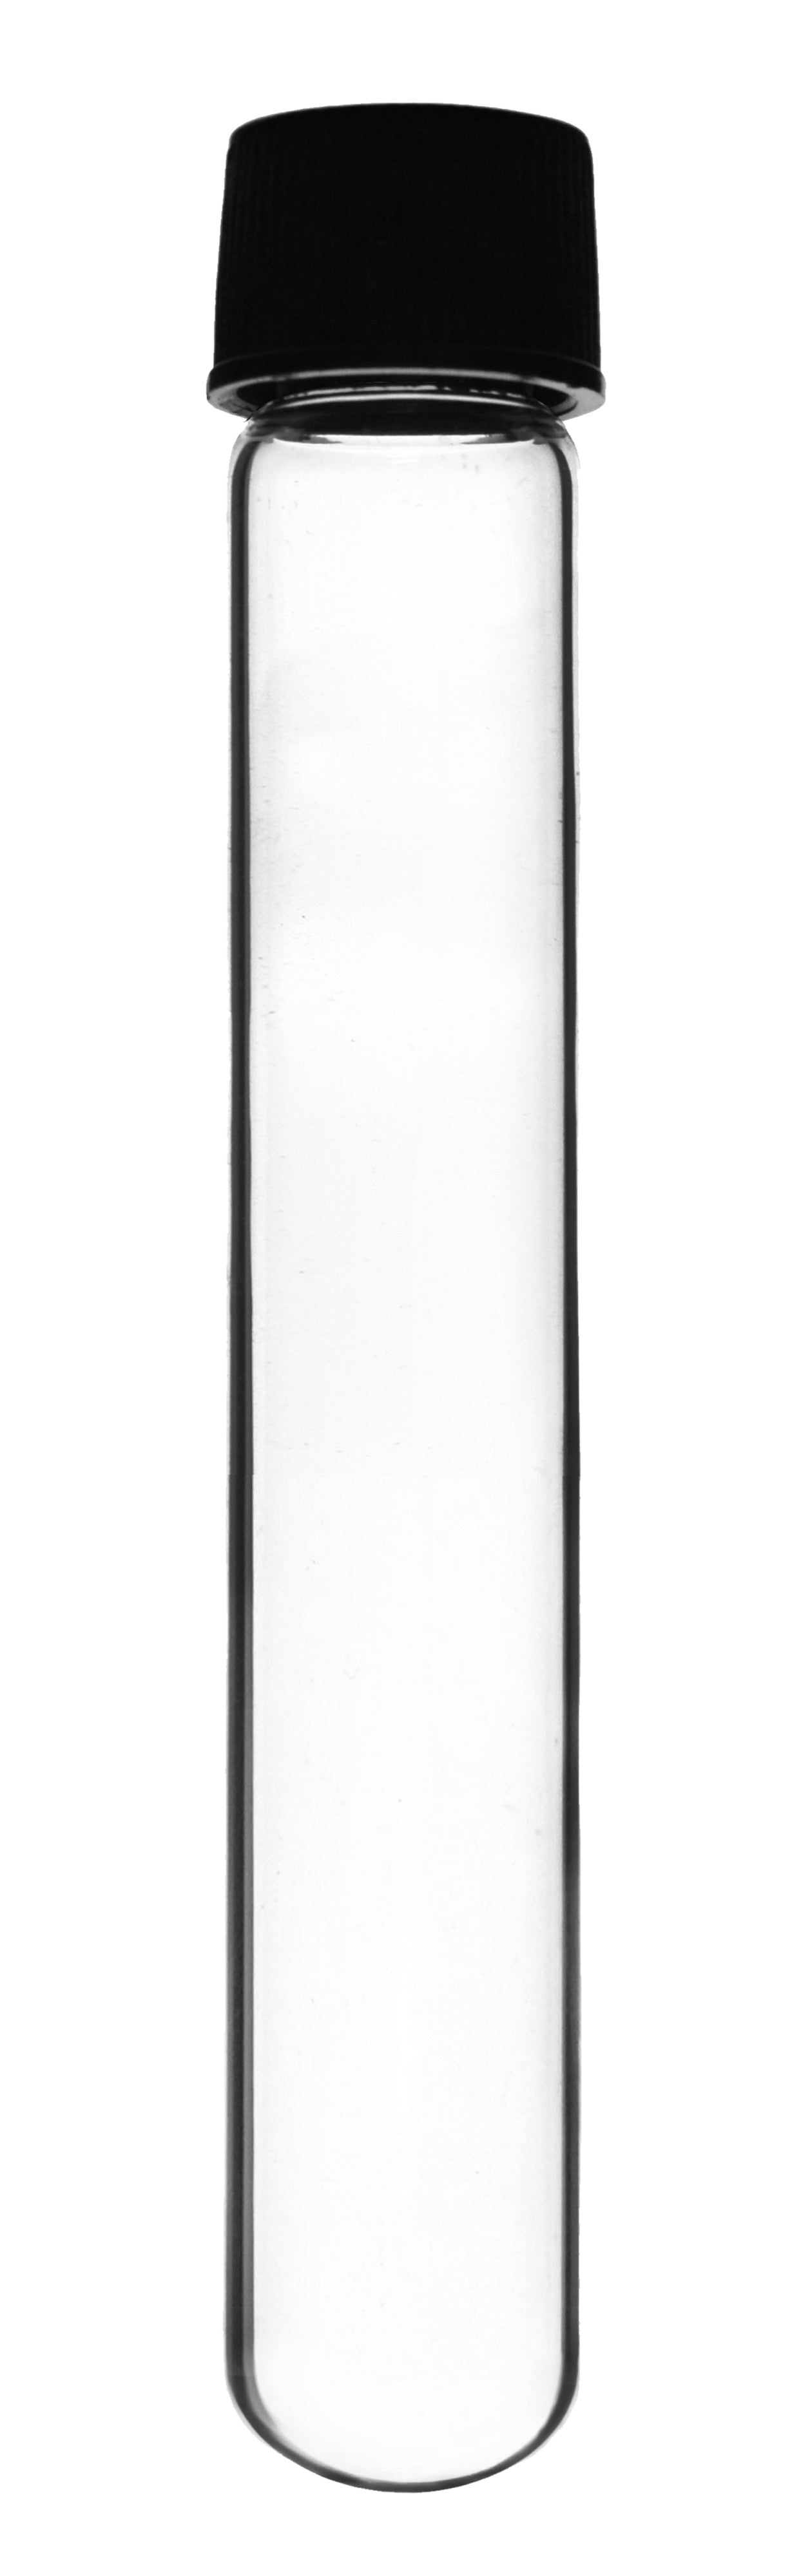 Borosilicate Glass Test Tubes, 50 ml, Round Bottom with Screw Cap